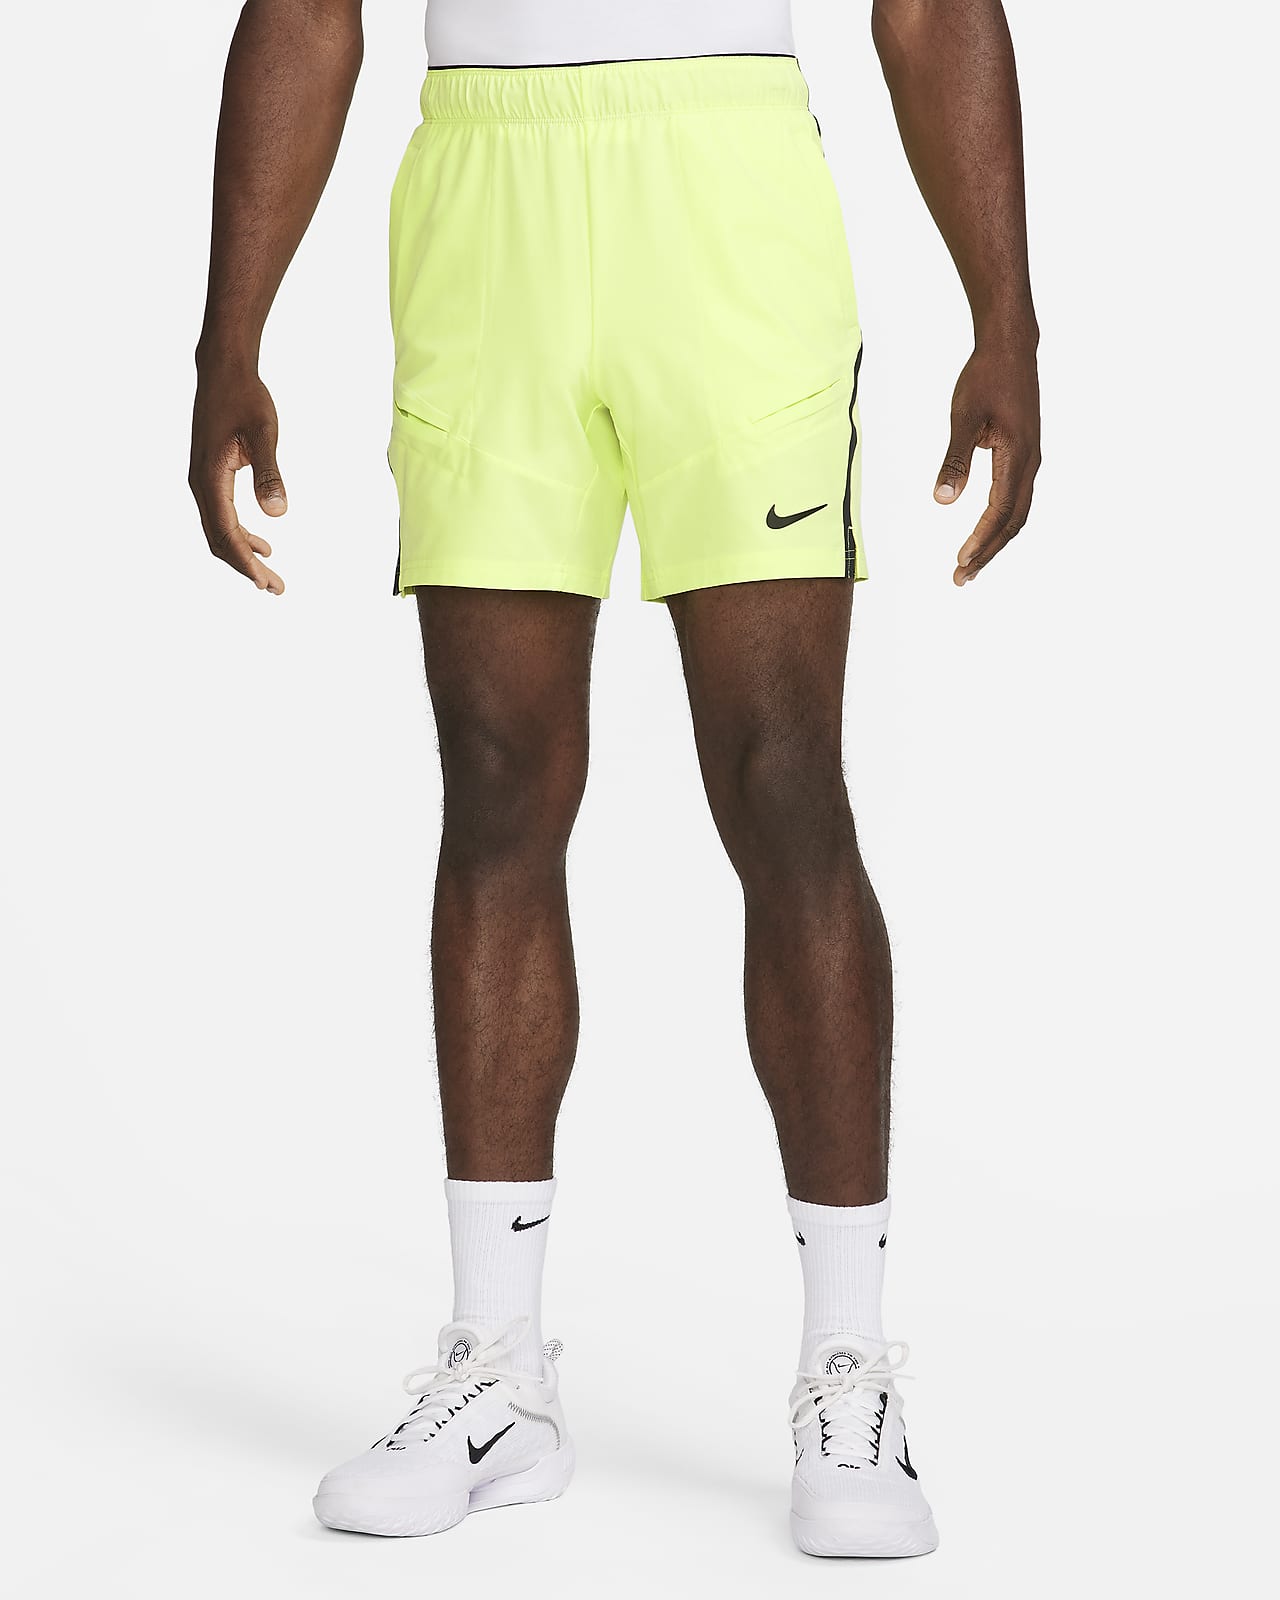 NikeCourt Advantage Dri-FIT 18 cm-es férfi teniszrövidnadrág